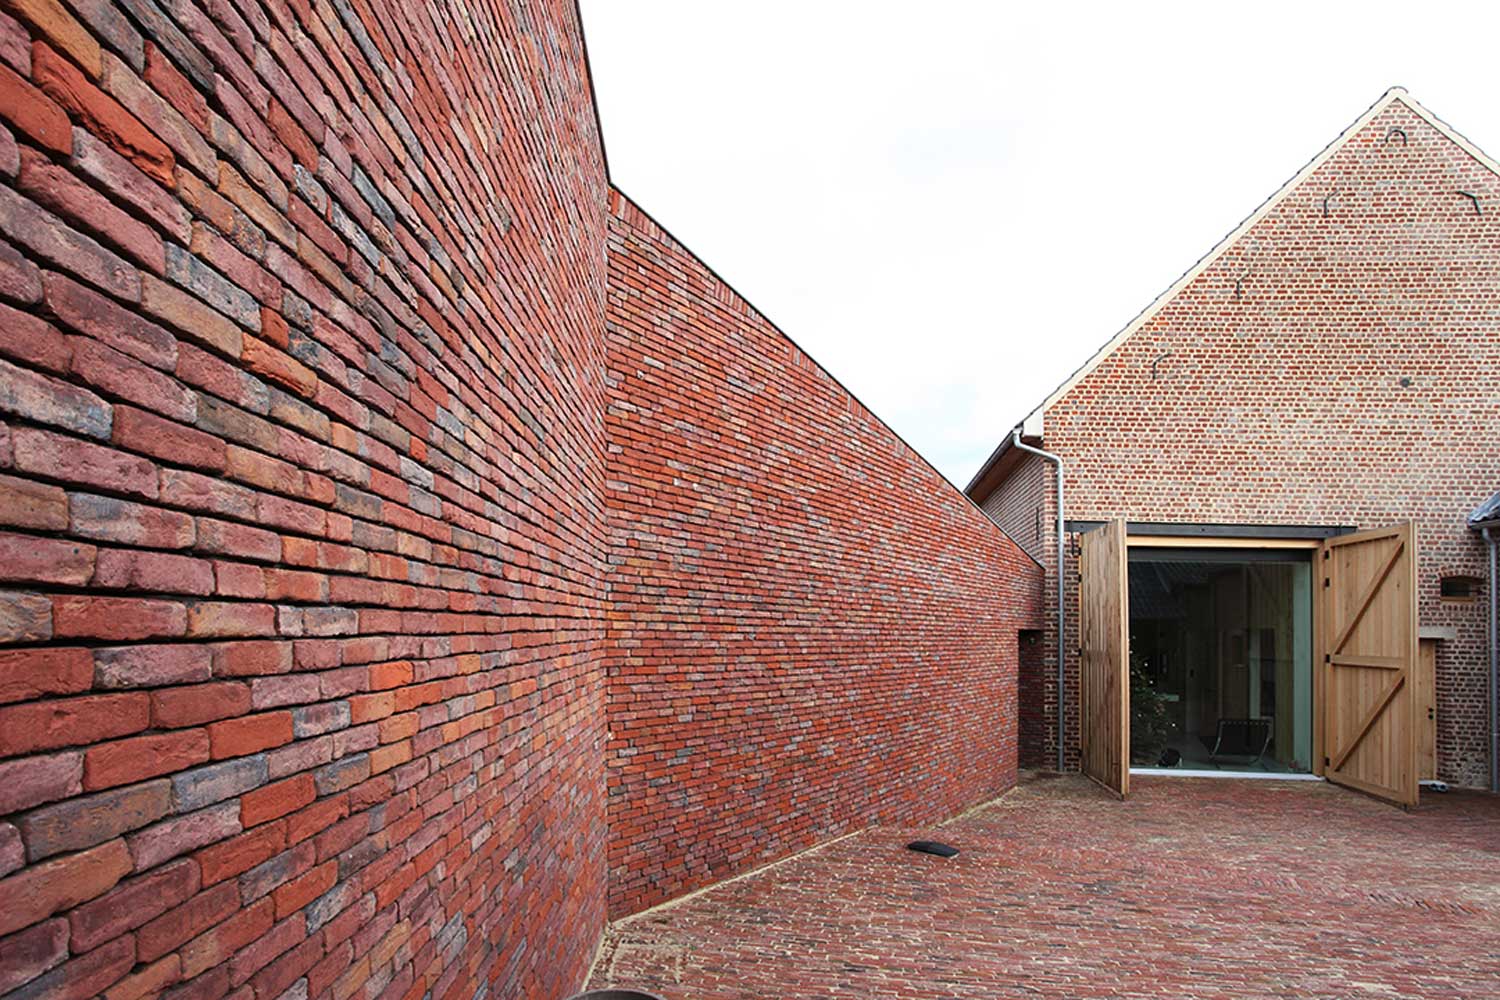 "Rabbit hole", Belgien, von Lens°Ass Architects (Einreichung im Rahmen des Fritz-Höger-Preises 2011 für Backstein-Architektur).